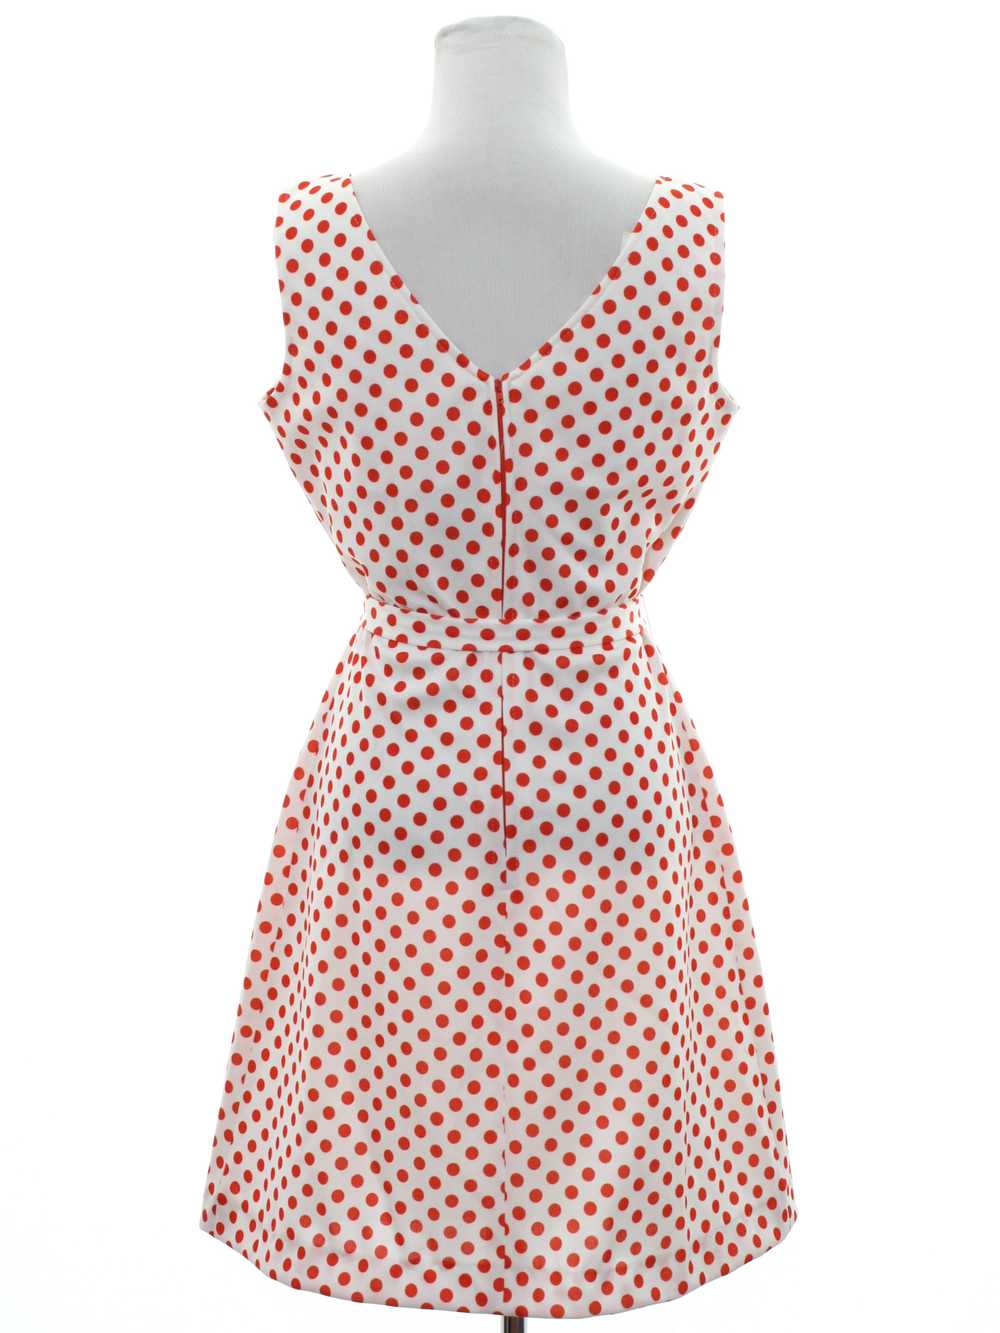 1970's Mod Knit Dress - image 3